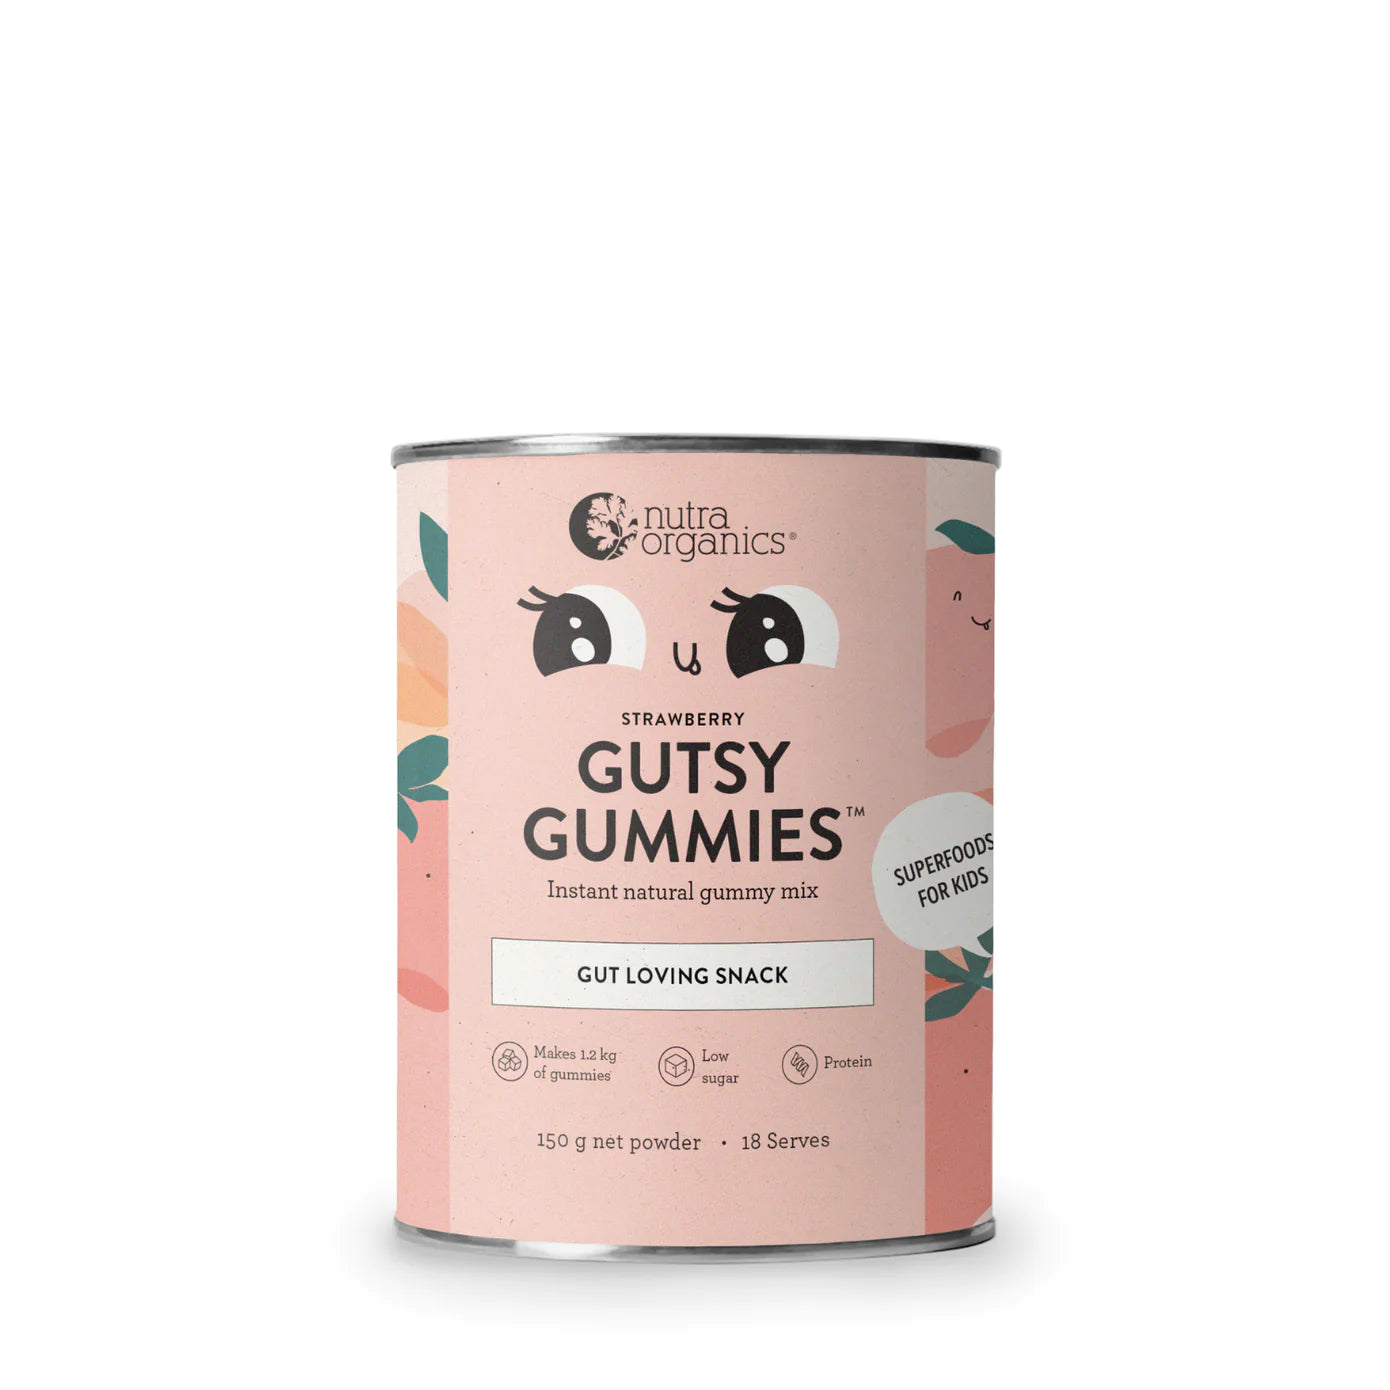 nutra organics gutsy gummies